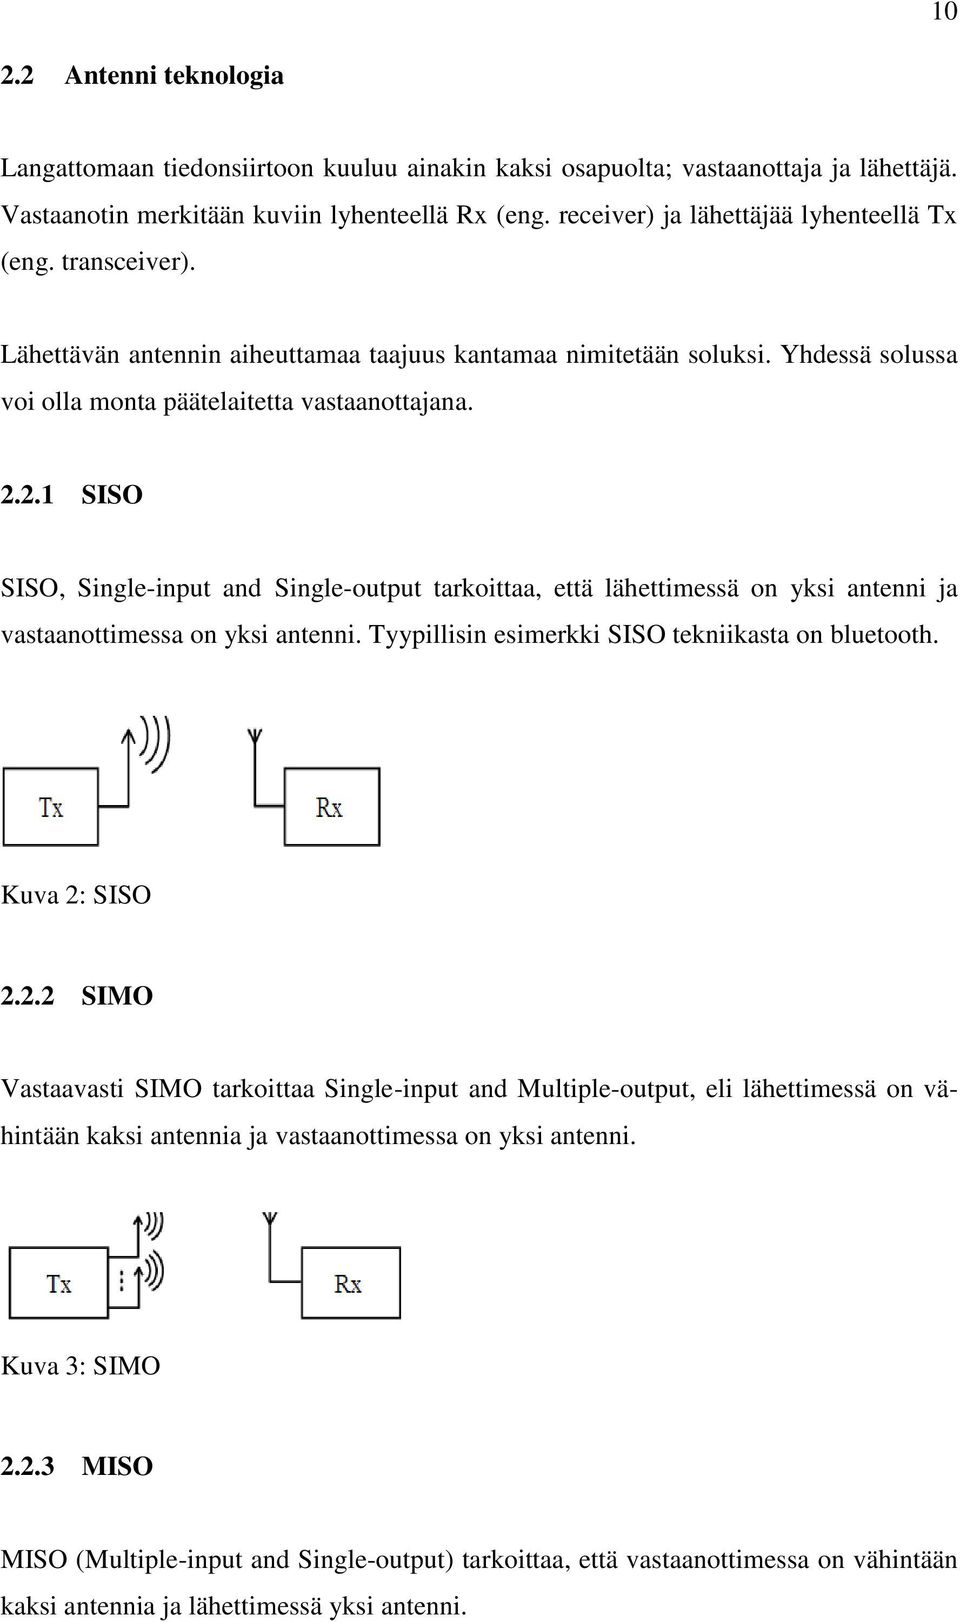 2.1 SISO SISO, Single-input and Single-output tarkoittaa, että lähettimessä on yksi antenni ja vastaanottimessa on yksi antenni. Tyypillisin esimerkki SISO tekniikasta on bluetooth. Kuva 2: SISO 2.2.2 SIMO Vastaavasti SIMO tarkoittaa Single-input and Multiple-output, eli lähettimessä on vähintään kaksi antennia ja vastaanottimessa on yksi antenni.